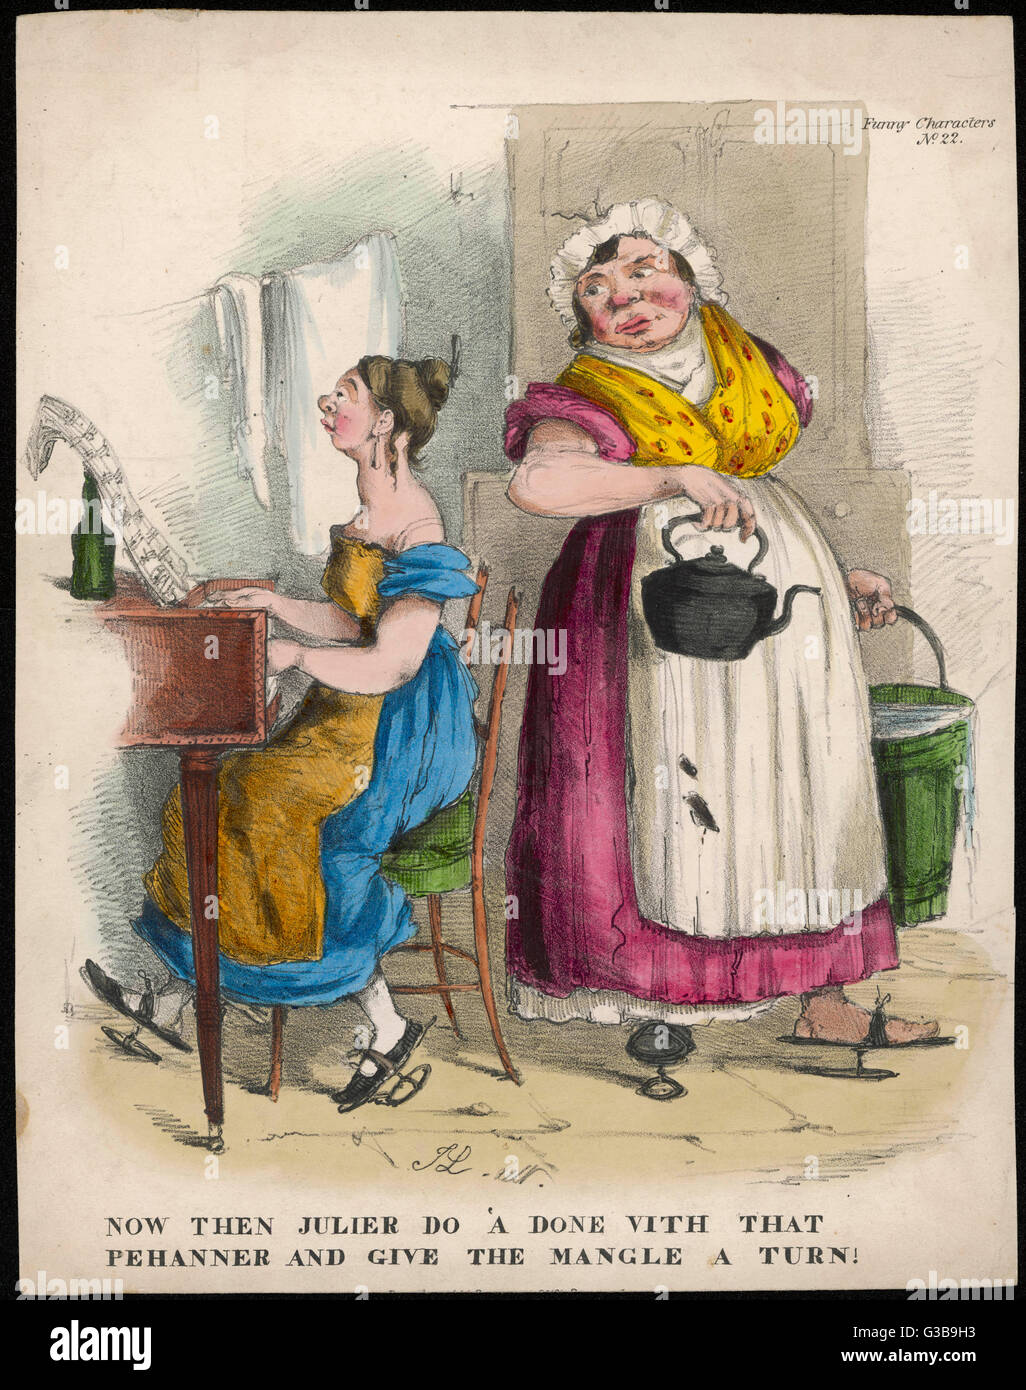 Ein Working Girl imitiert die vornehmen Leistungen der jungen Damen. Ihr  Kleid ist niedrig geschnitten mit Puffärmeln &amp; wird mit einer groben  Schürze getragen. Beide Frauen tragen Holzschuhen. Datum: 1837-1838  Stockfotografie - Alamy